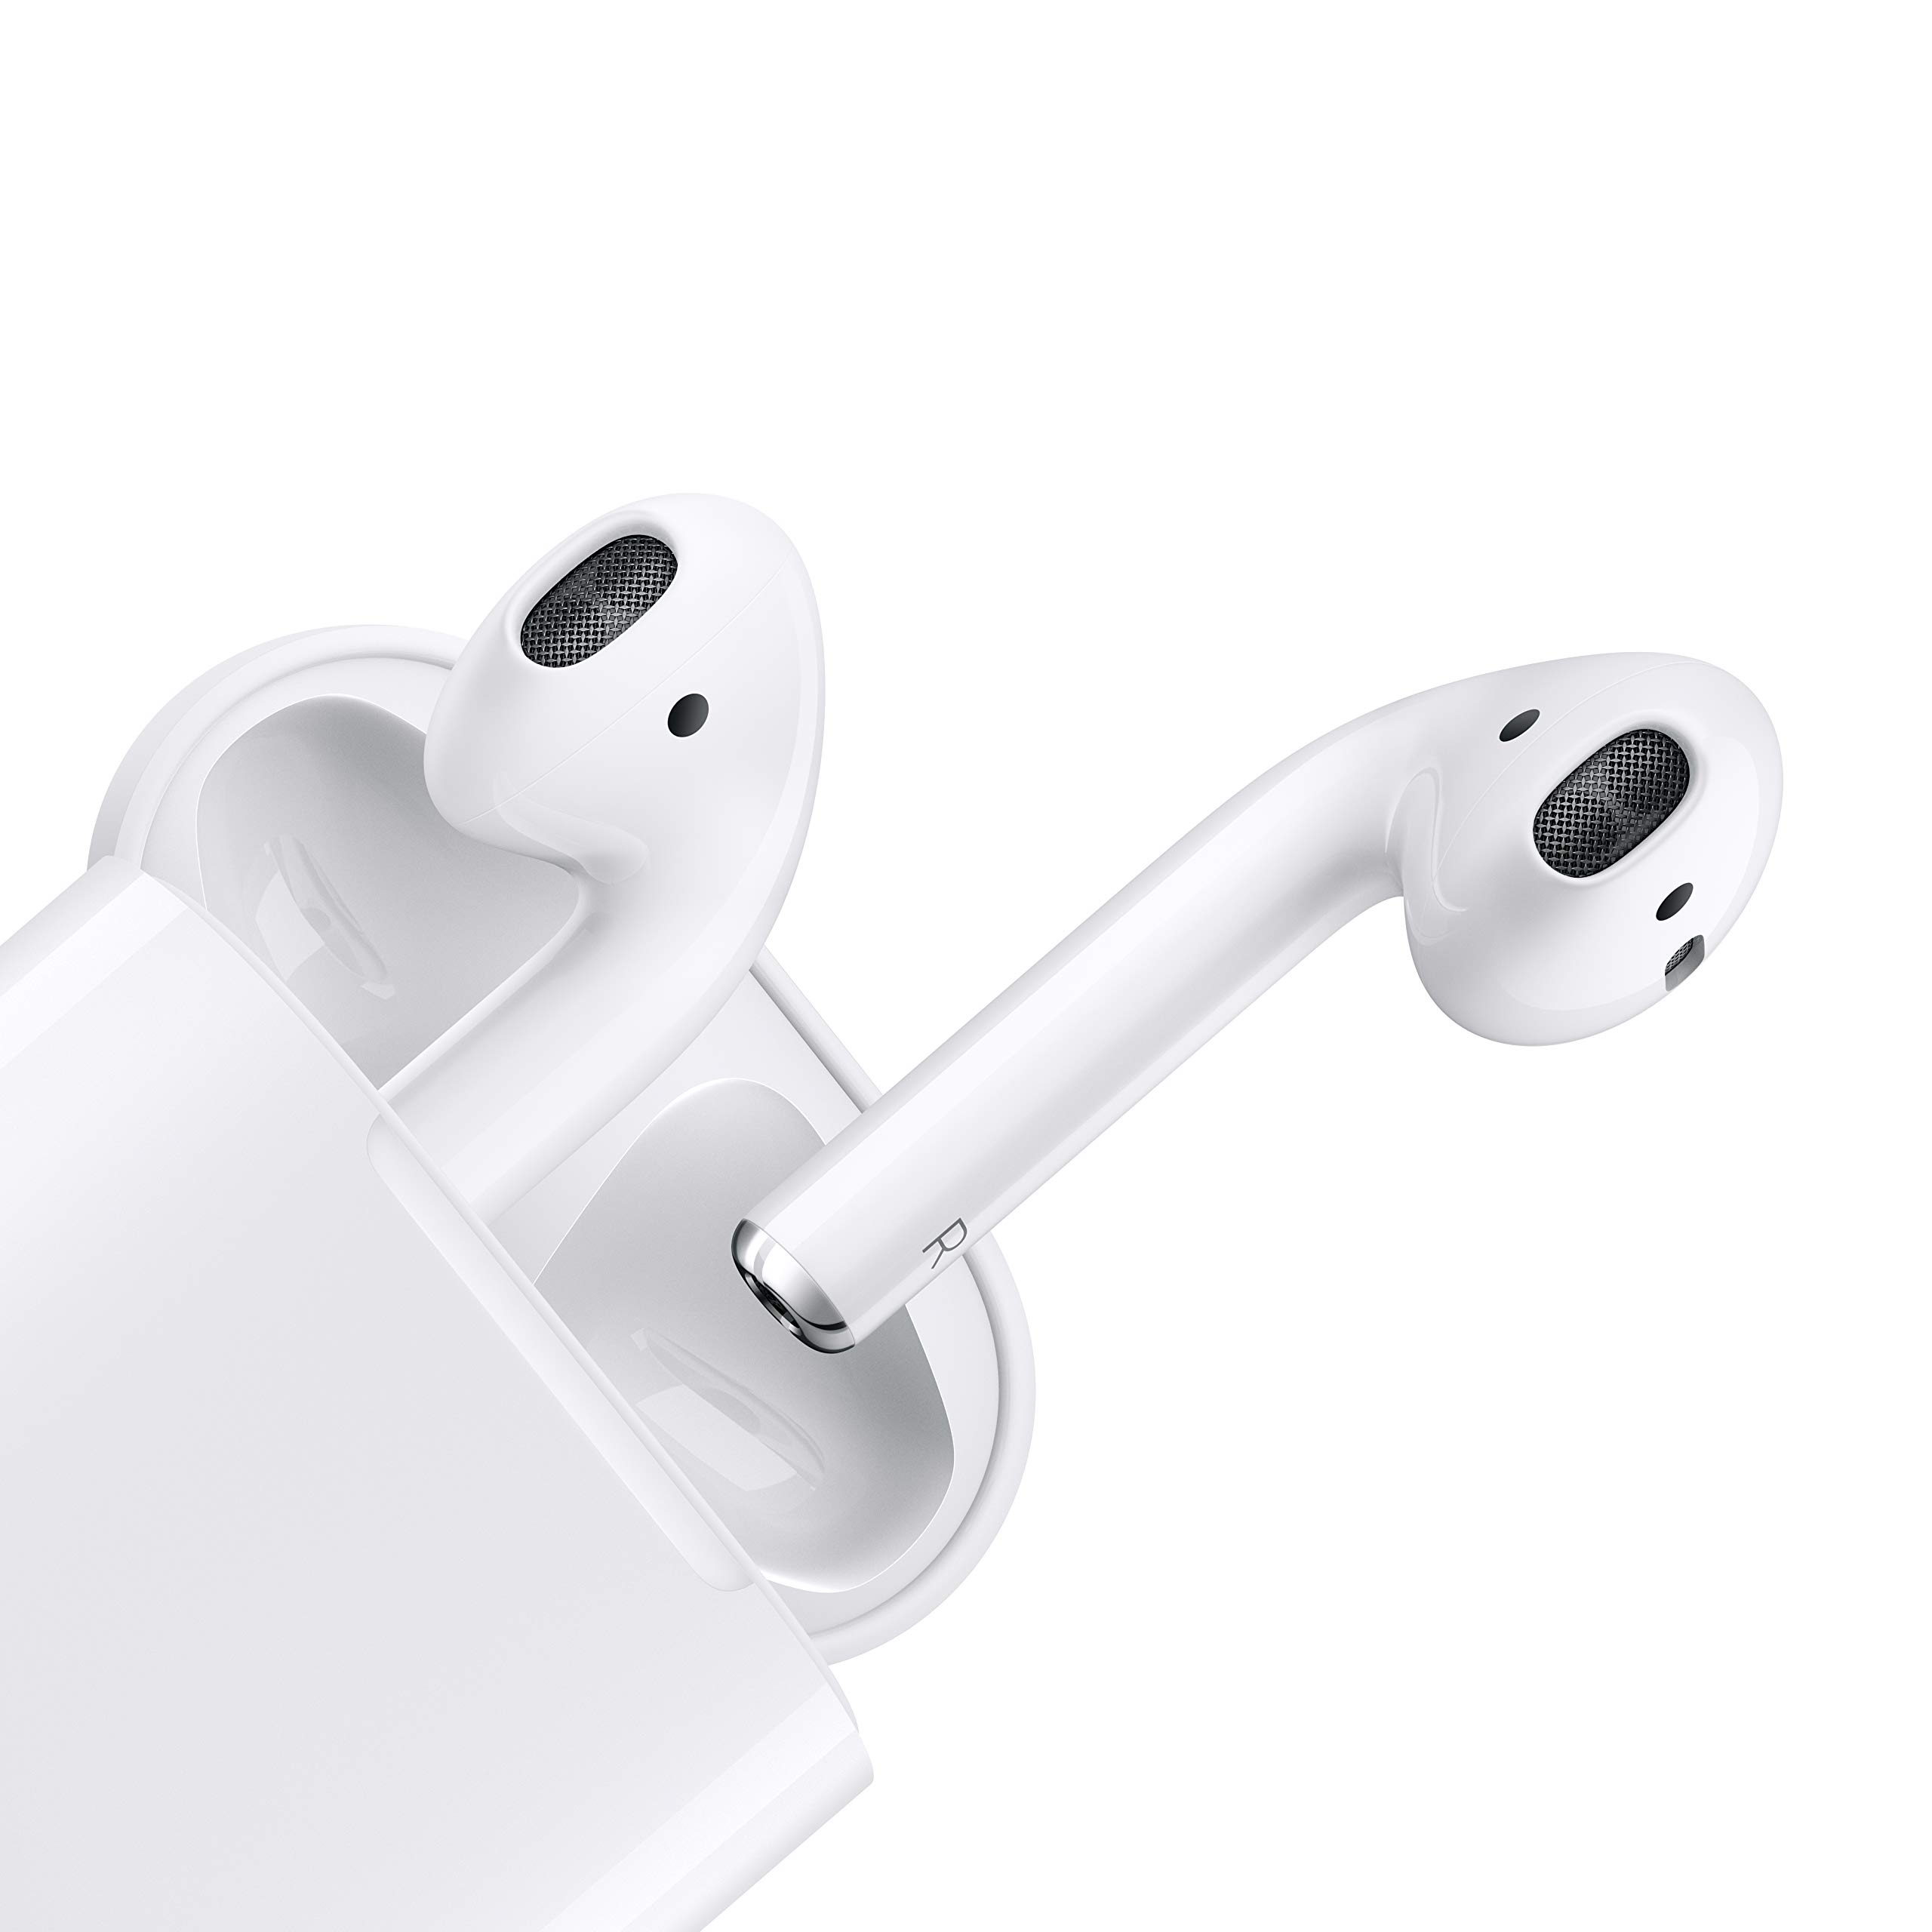 Air pod 2 (copie conforme)  - Les Apple AirPods 2 sont des true wireless sous la format d'écouteurs classiques. Ils existent en deux versions, avec un boitier qui se charge uniquement via un câble Lightning, il y a également une autre version avec un boitier qui se charge via une charge sans fil (Qi).